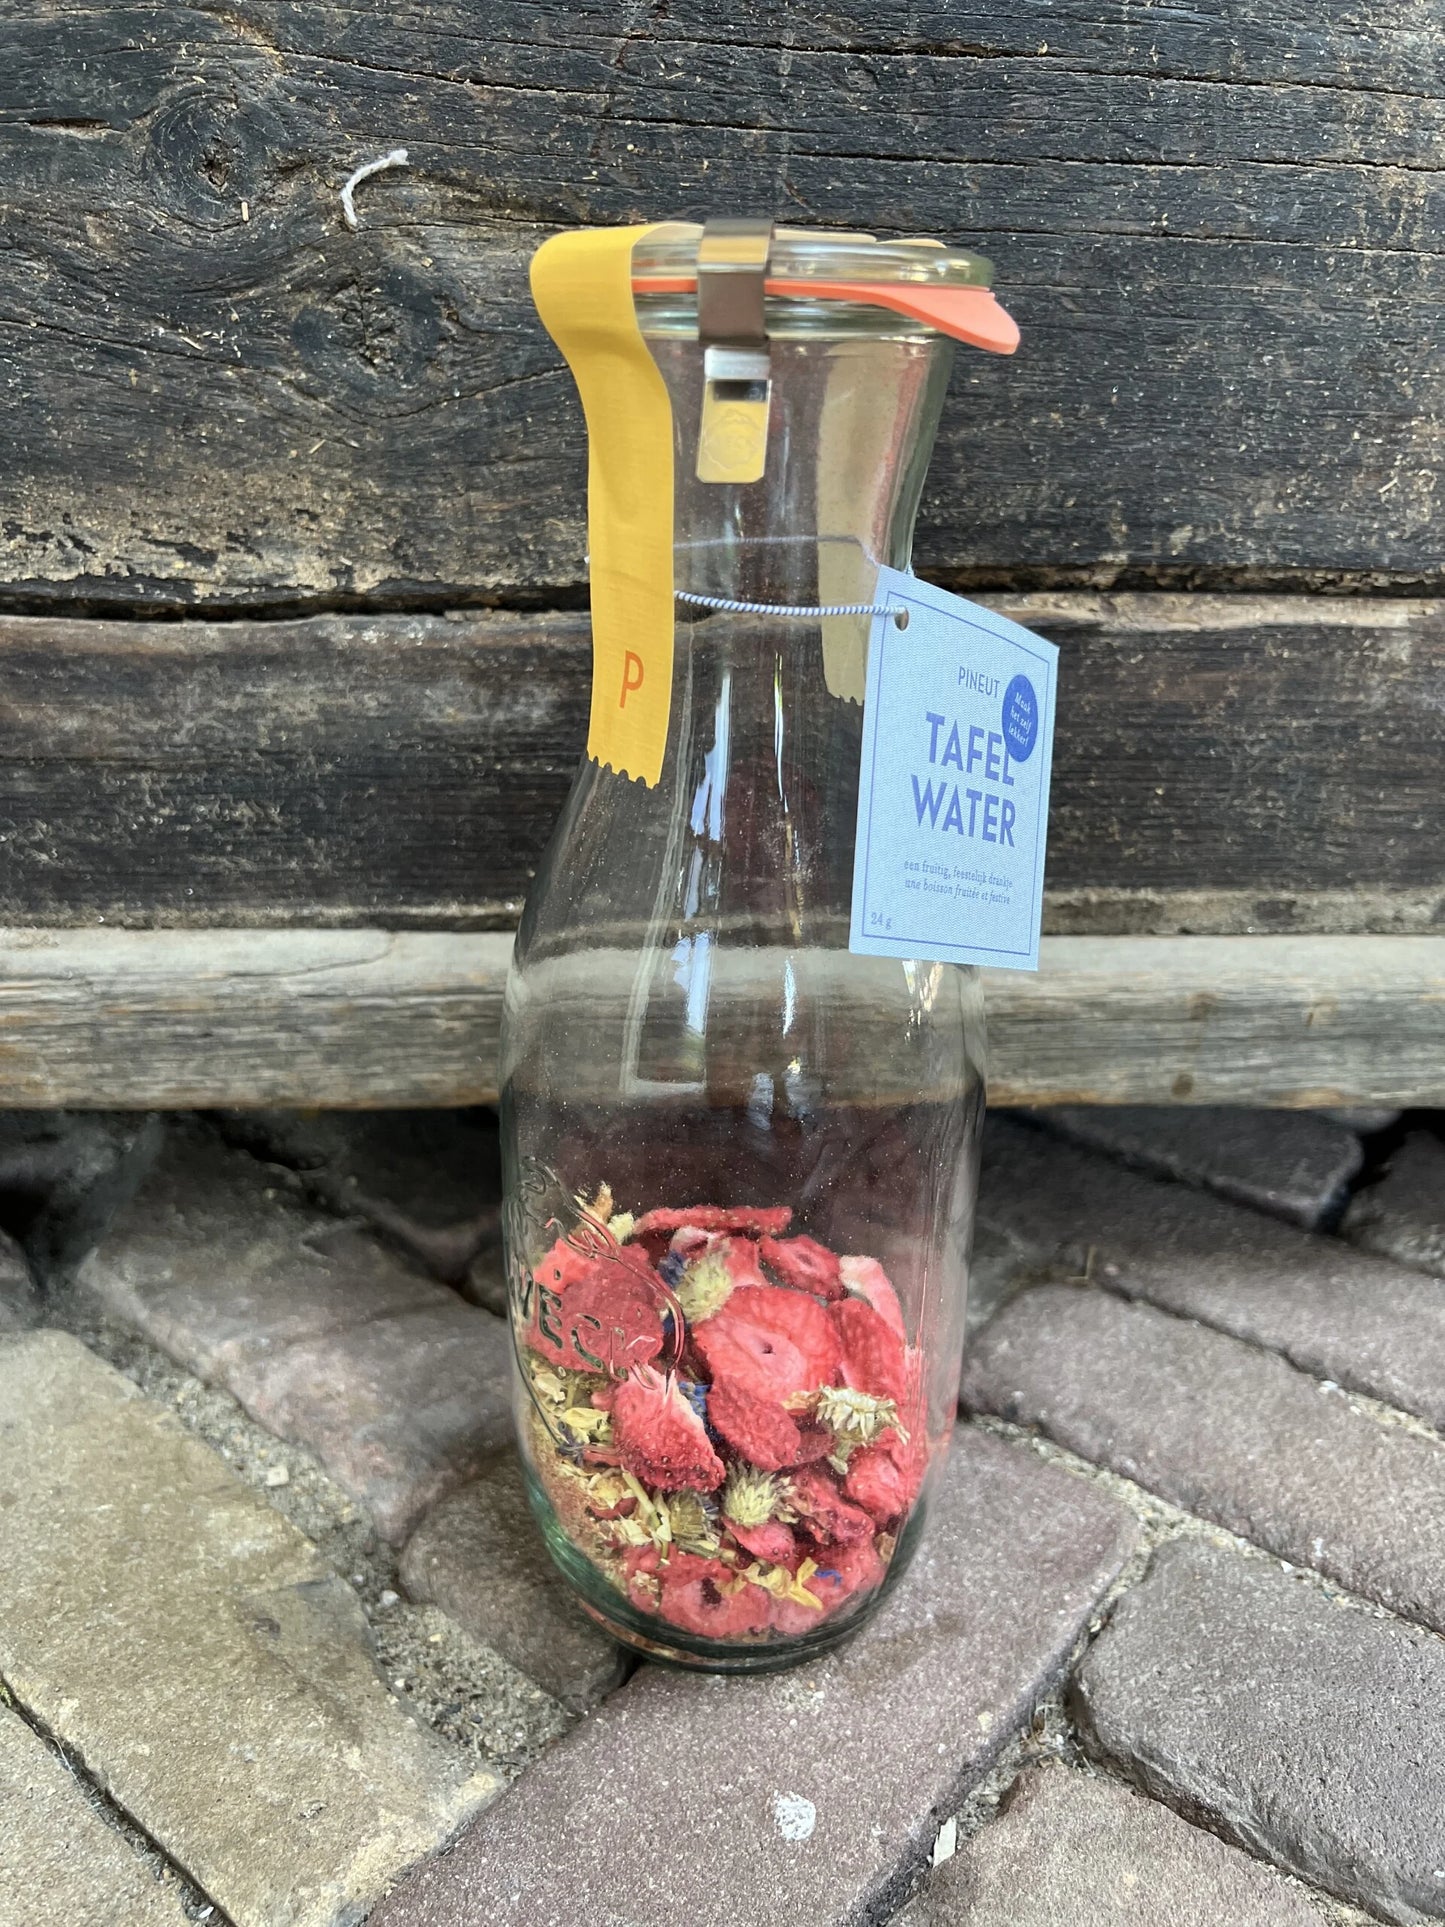 Tafelwasser mit frischem Fruchtgeschmack – Erdbeere/Hibiskus